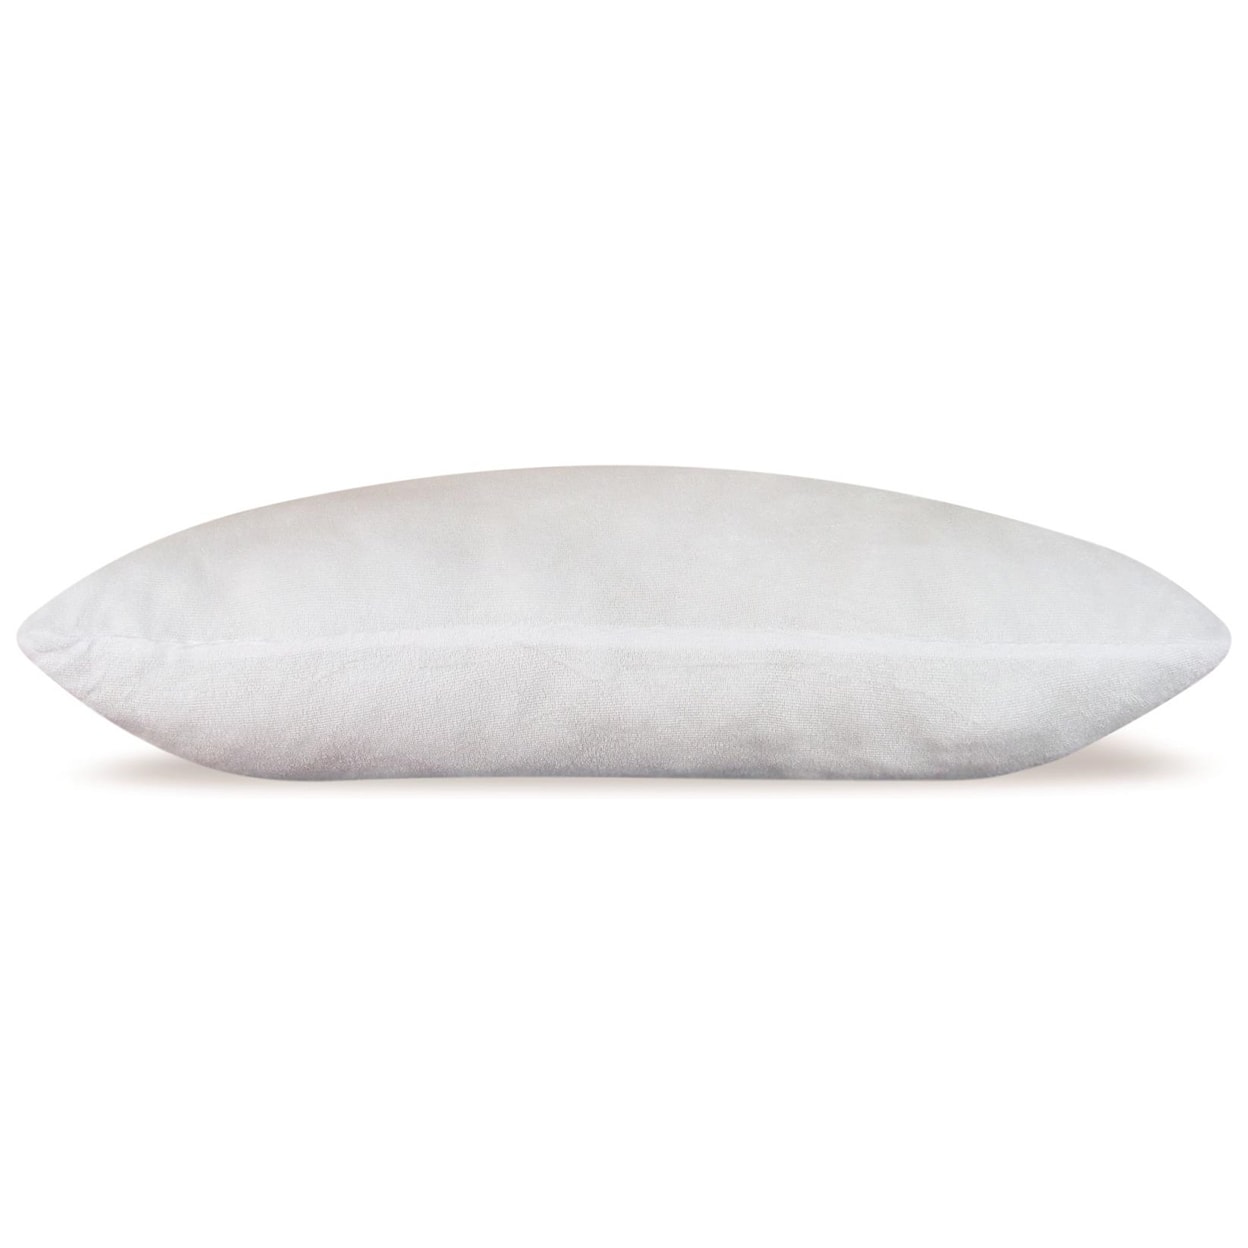 UV3 Masterguard Sleep Rite Queen Pillow